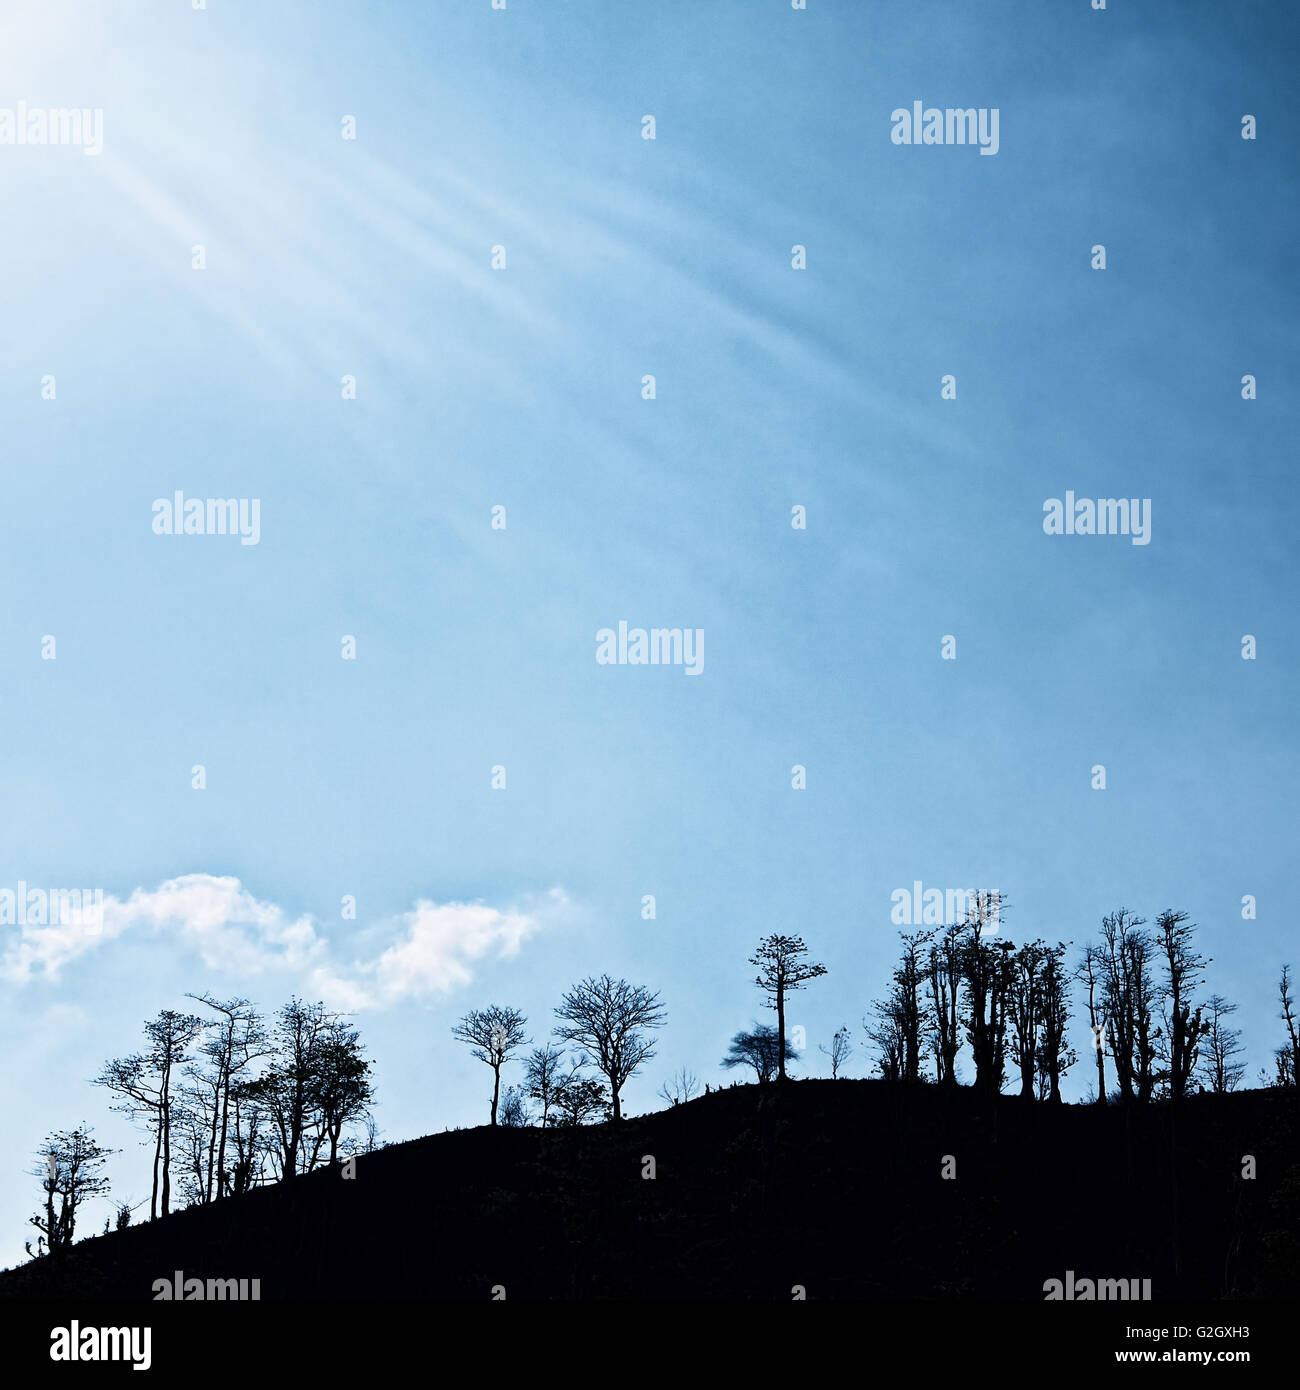 Quadratische Vintage blauen Hintergrund des dramatischen Himmel mit weißen Sonnenstrahlen und schwarze Silhouette von Bäumen auf Hügel. Stockfoto